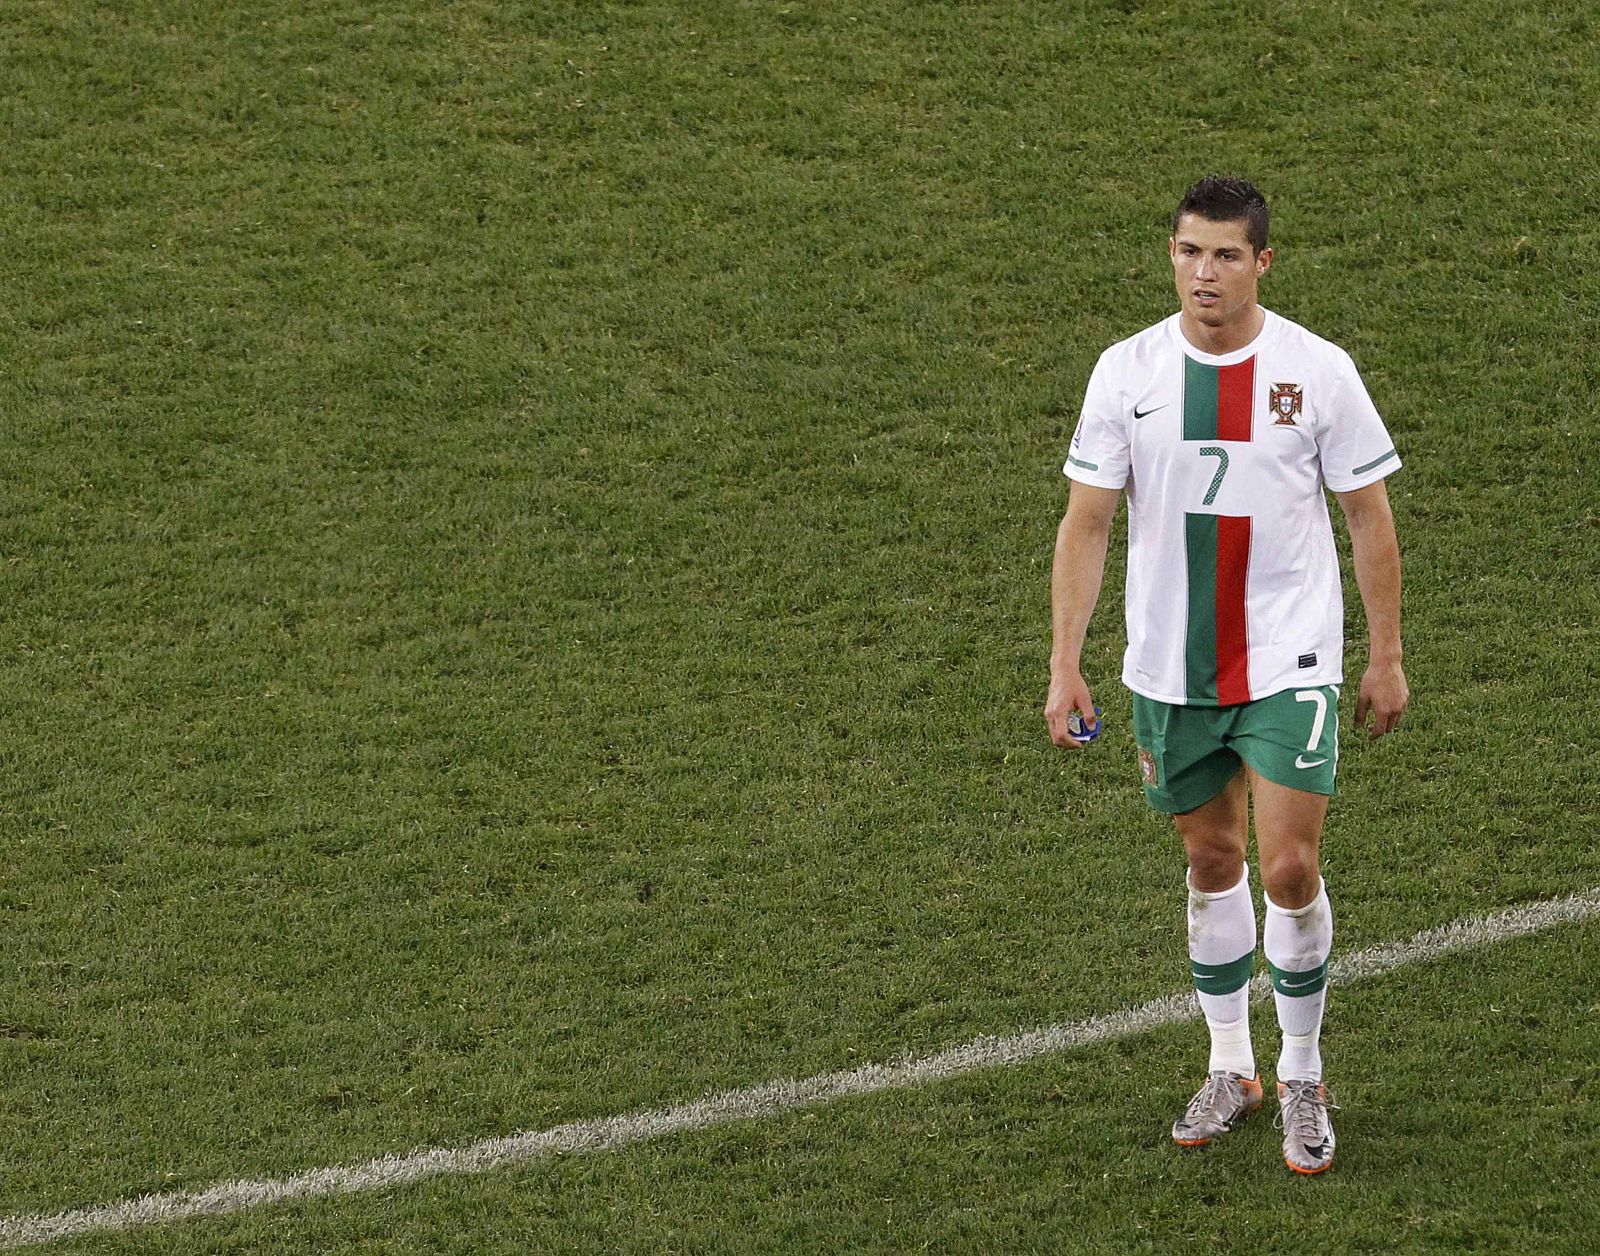 Cristiano Ronaldo dejó el campo tras la derrota de Portugal sin saludar a ningún jugador español.